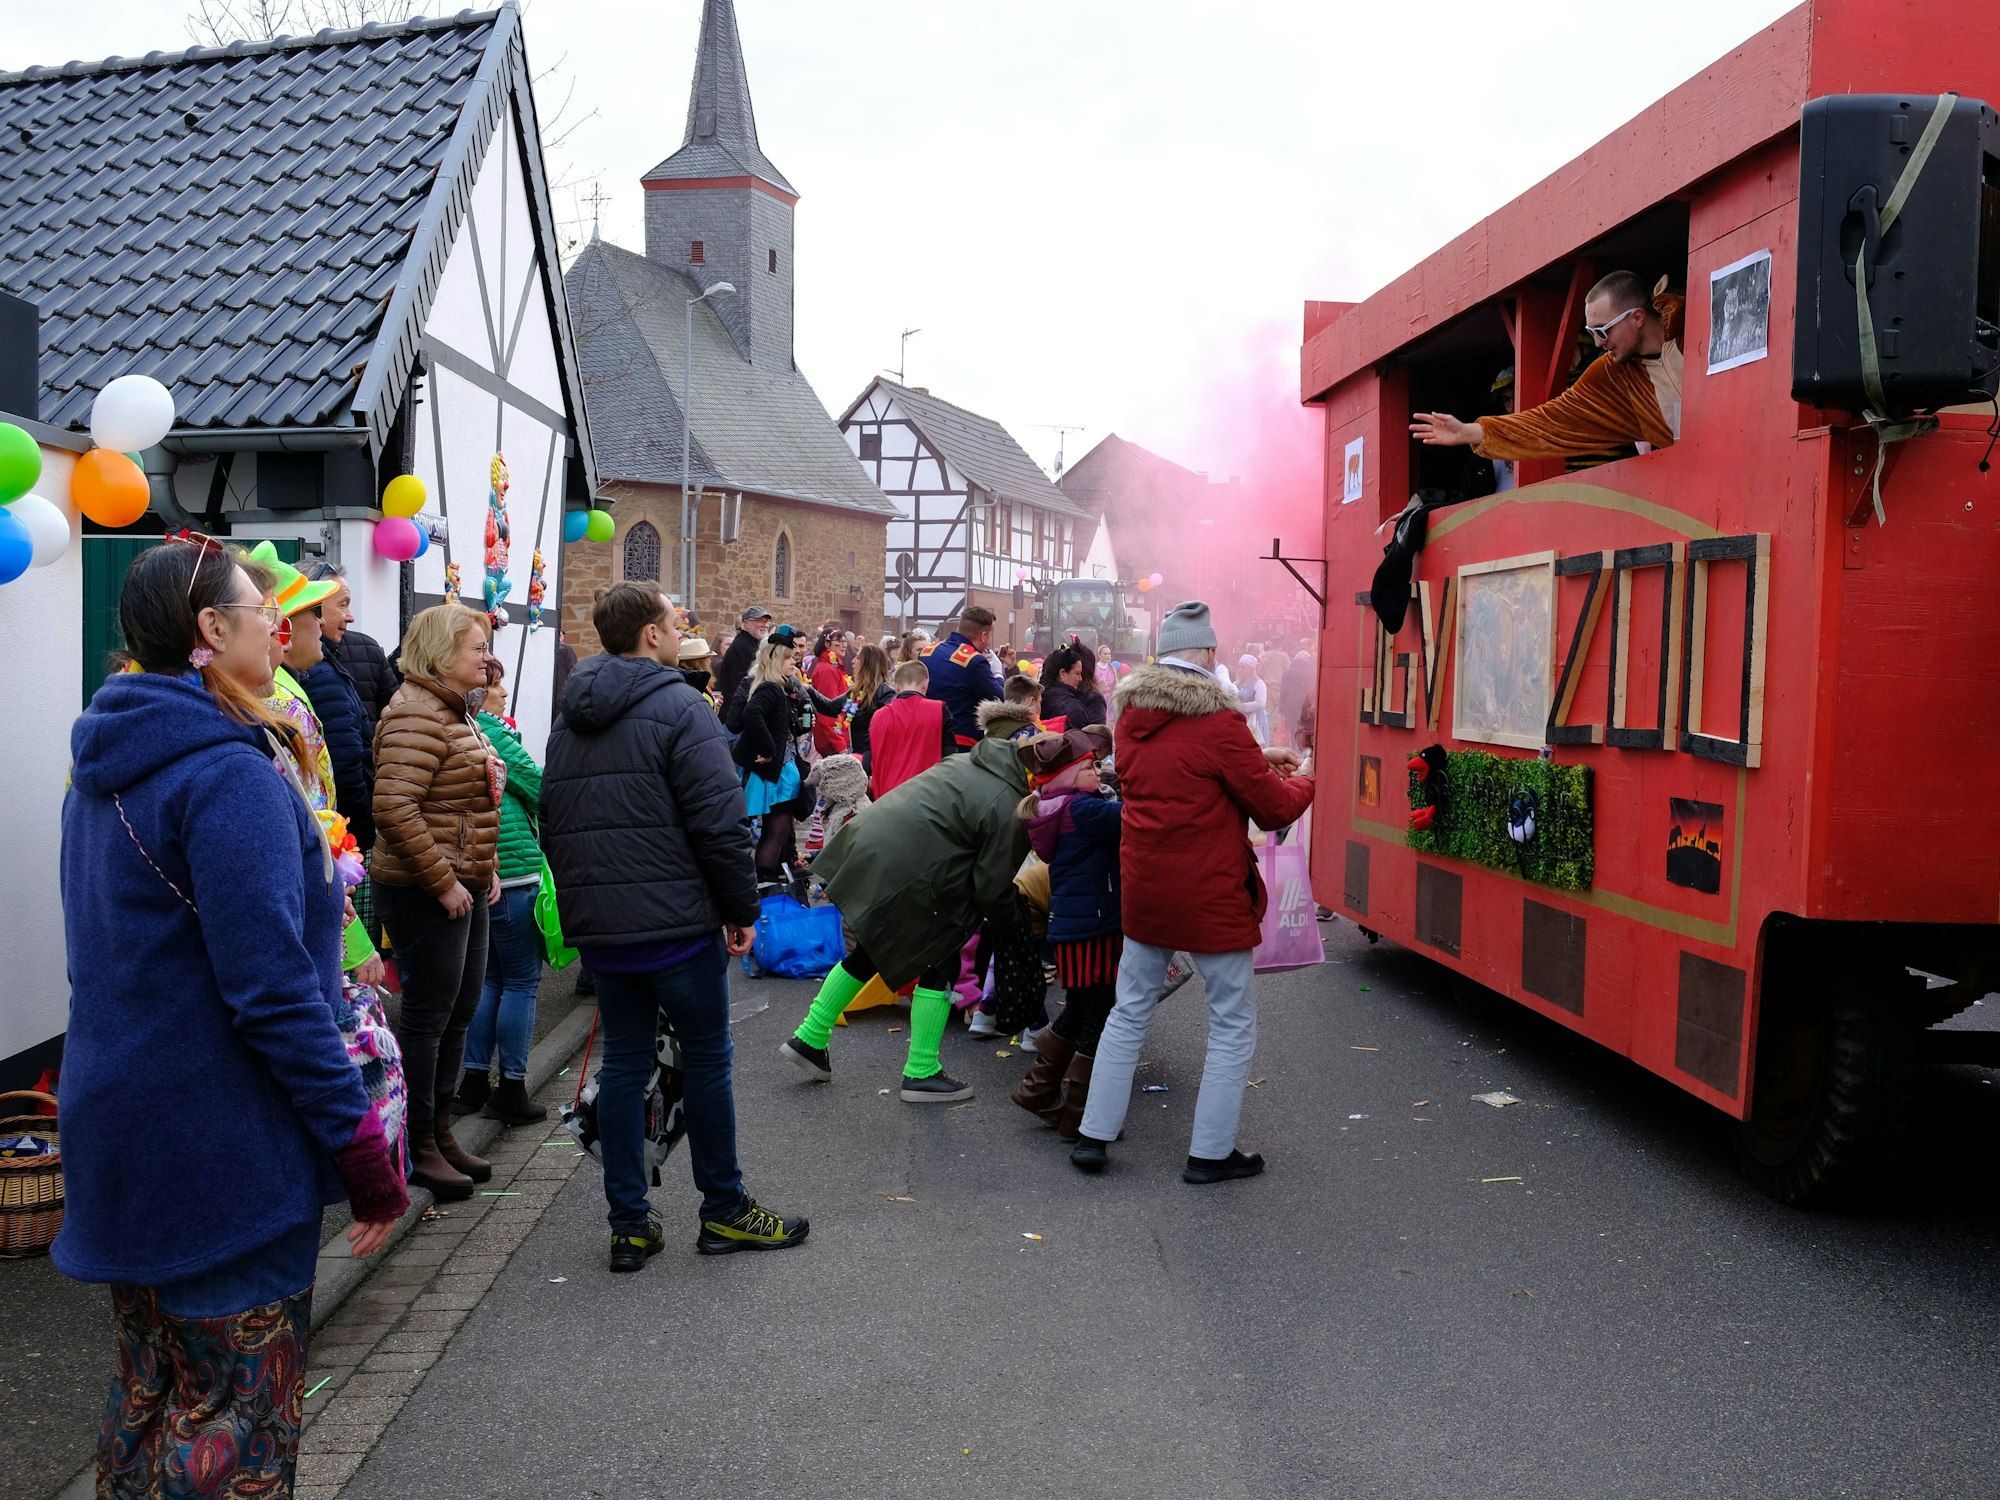 Viele Besucher kamen zum Abschluss des Straßenkarnevals zum Veilchendienstagszug nach Firmenich-Obergartzem. Zu sehen ist der Wagen des Junggesellenvereins. rosa Nebel steigt aus dem hinteren Teil auf.